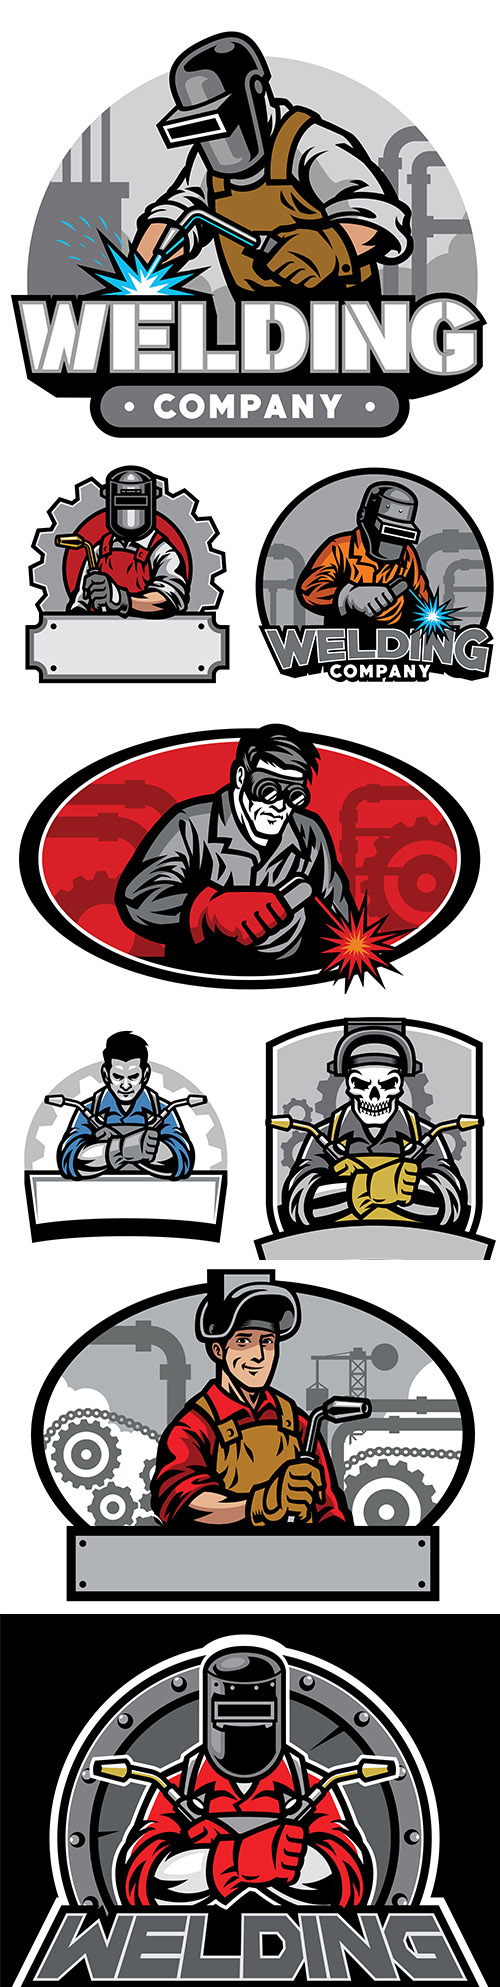 Welder with welding tools and helmet design company logo
